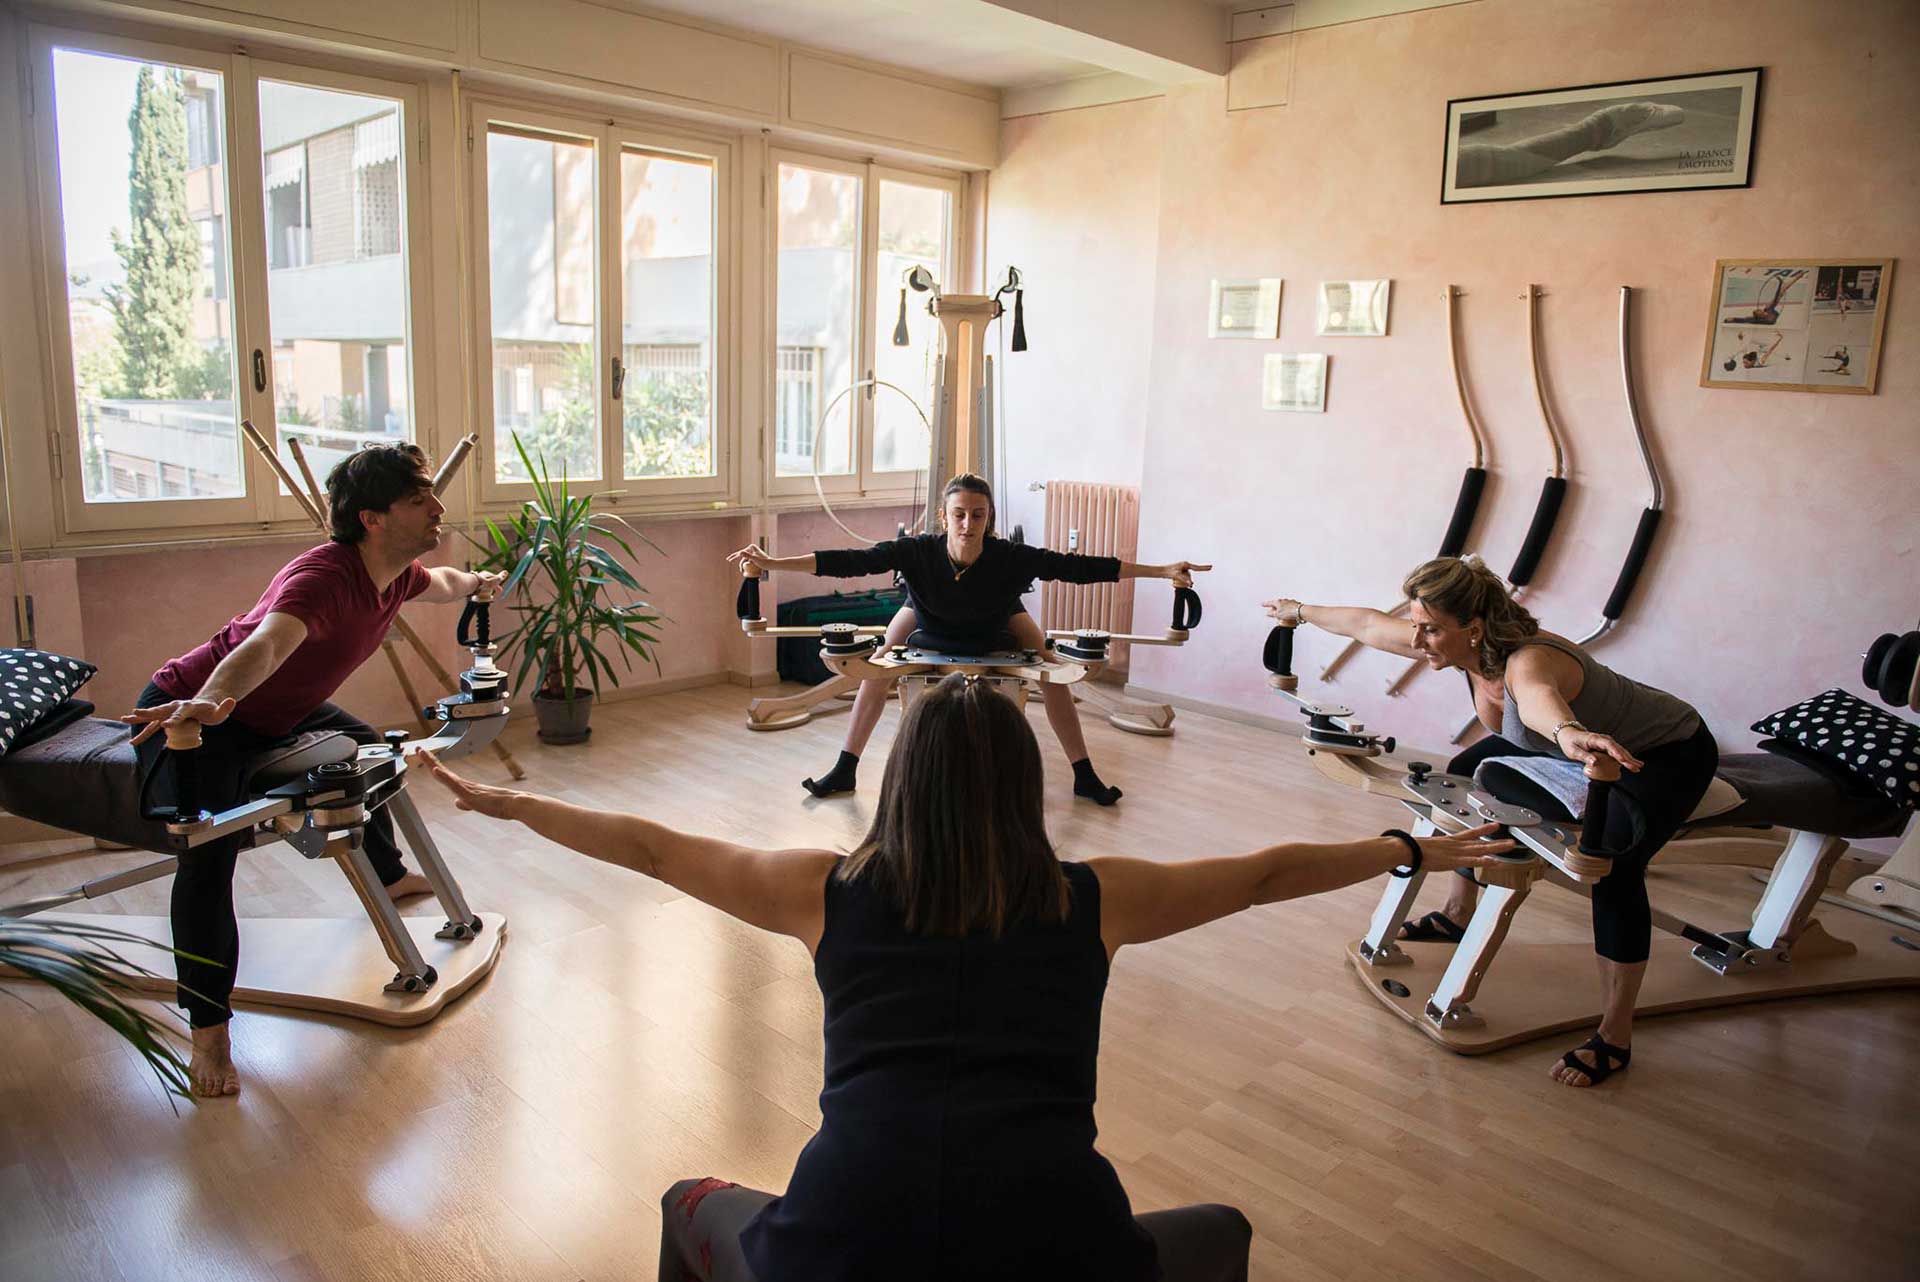 Wave Lab è un'associazione sportiva di Firenze, che svolge attività mirate a rieducare corpo e mente attraverso il movimento e discipline come il Gyrotonic.